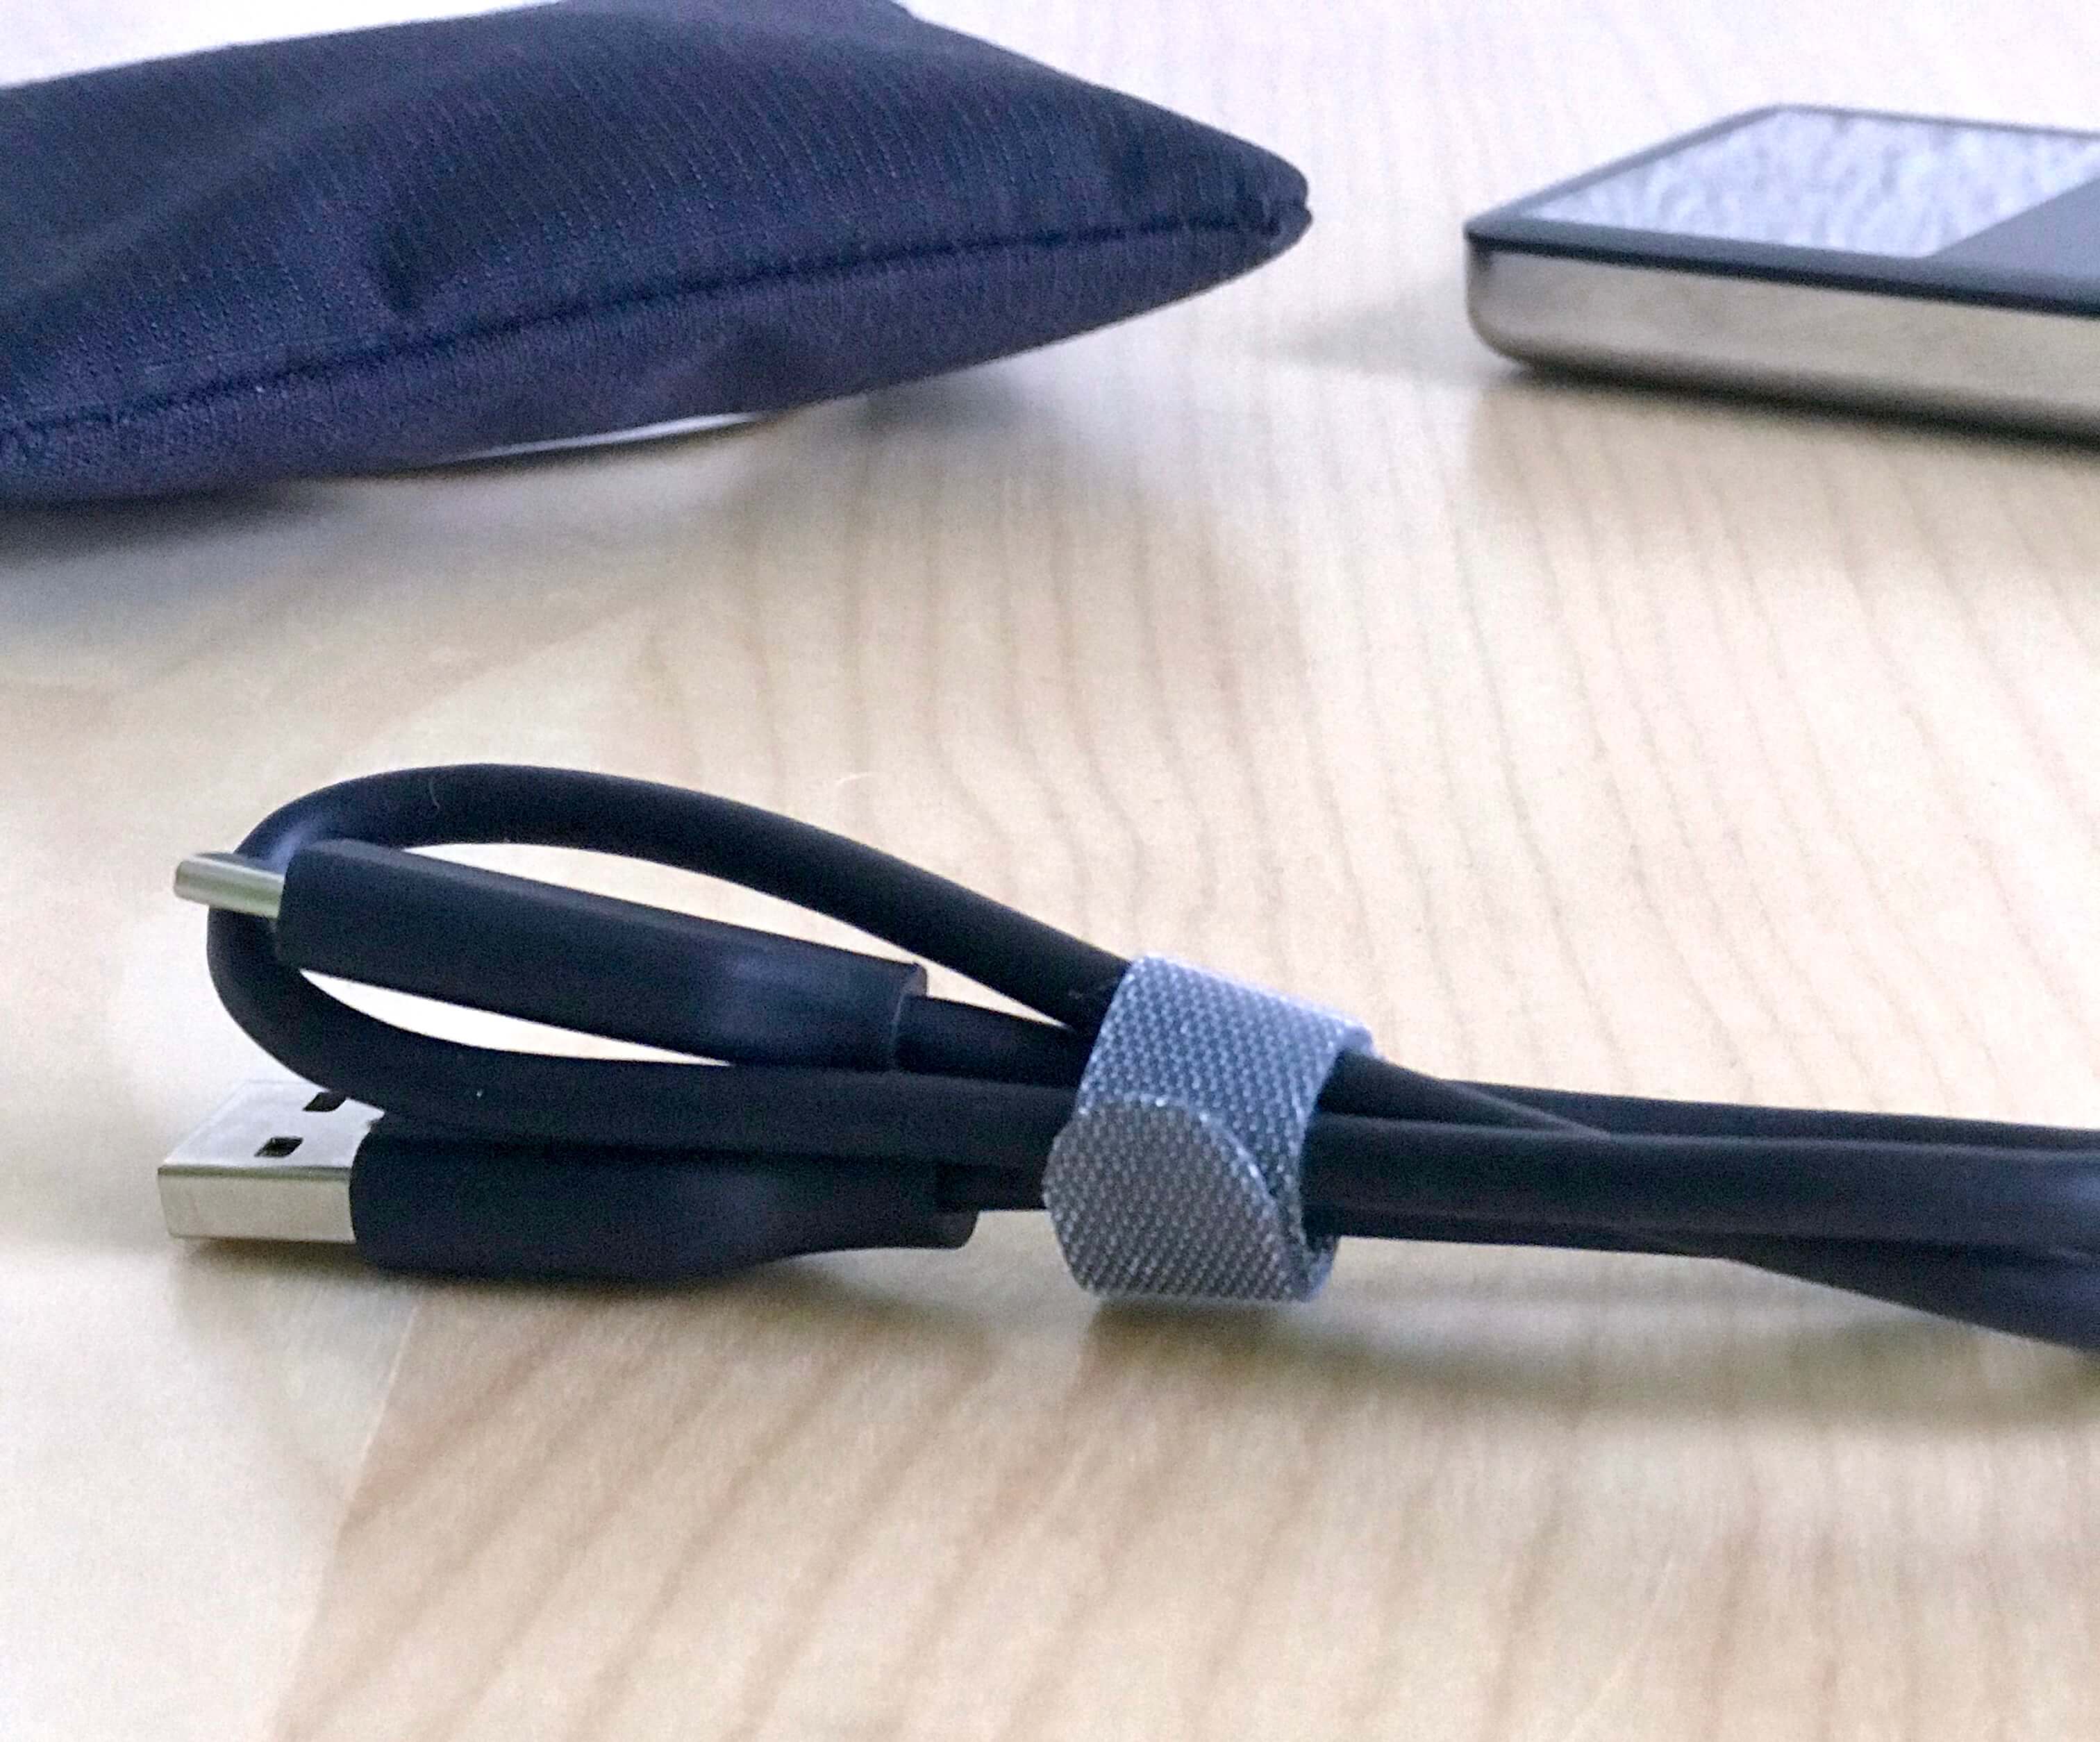 Bij de Samsung T5 worden twee kabels geleverd: een USB-C kabel en een USB-A-naar-USB-C-kabel